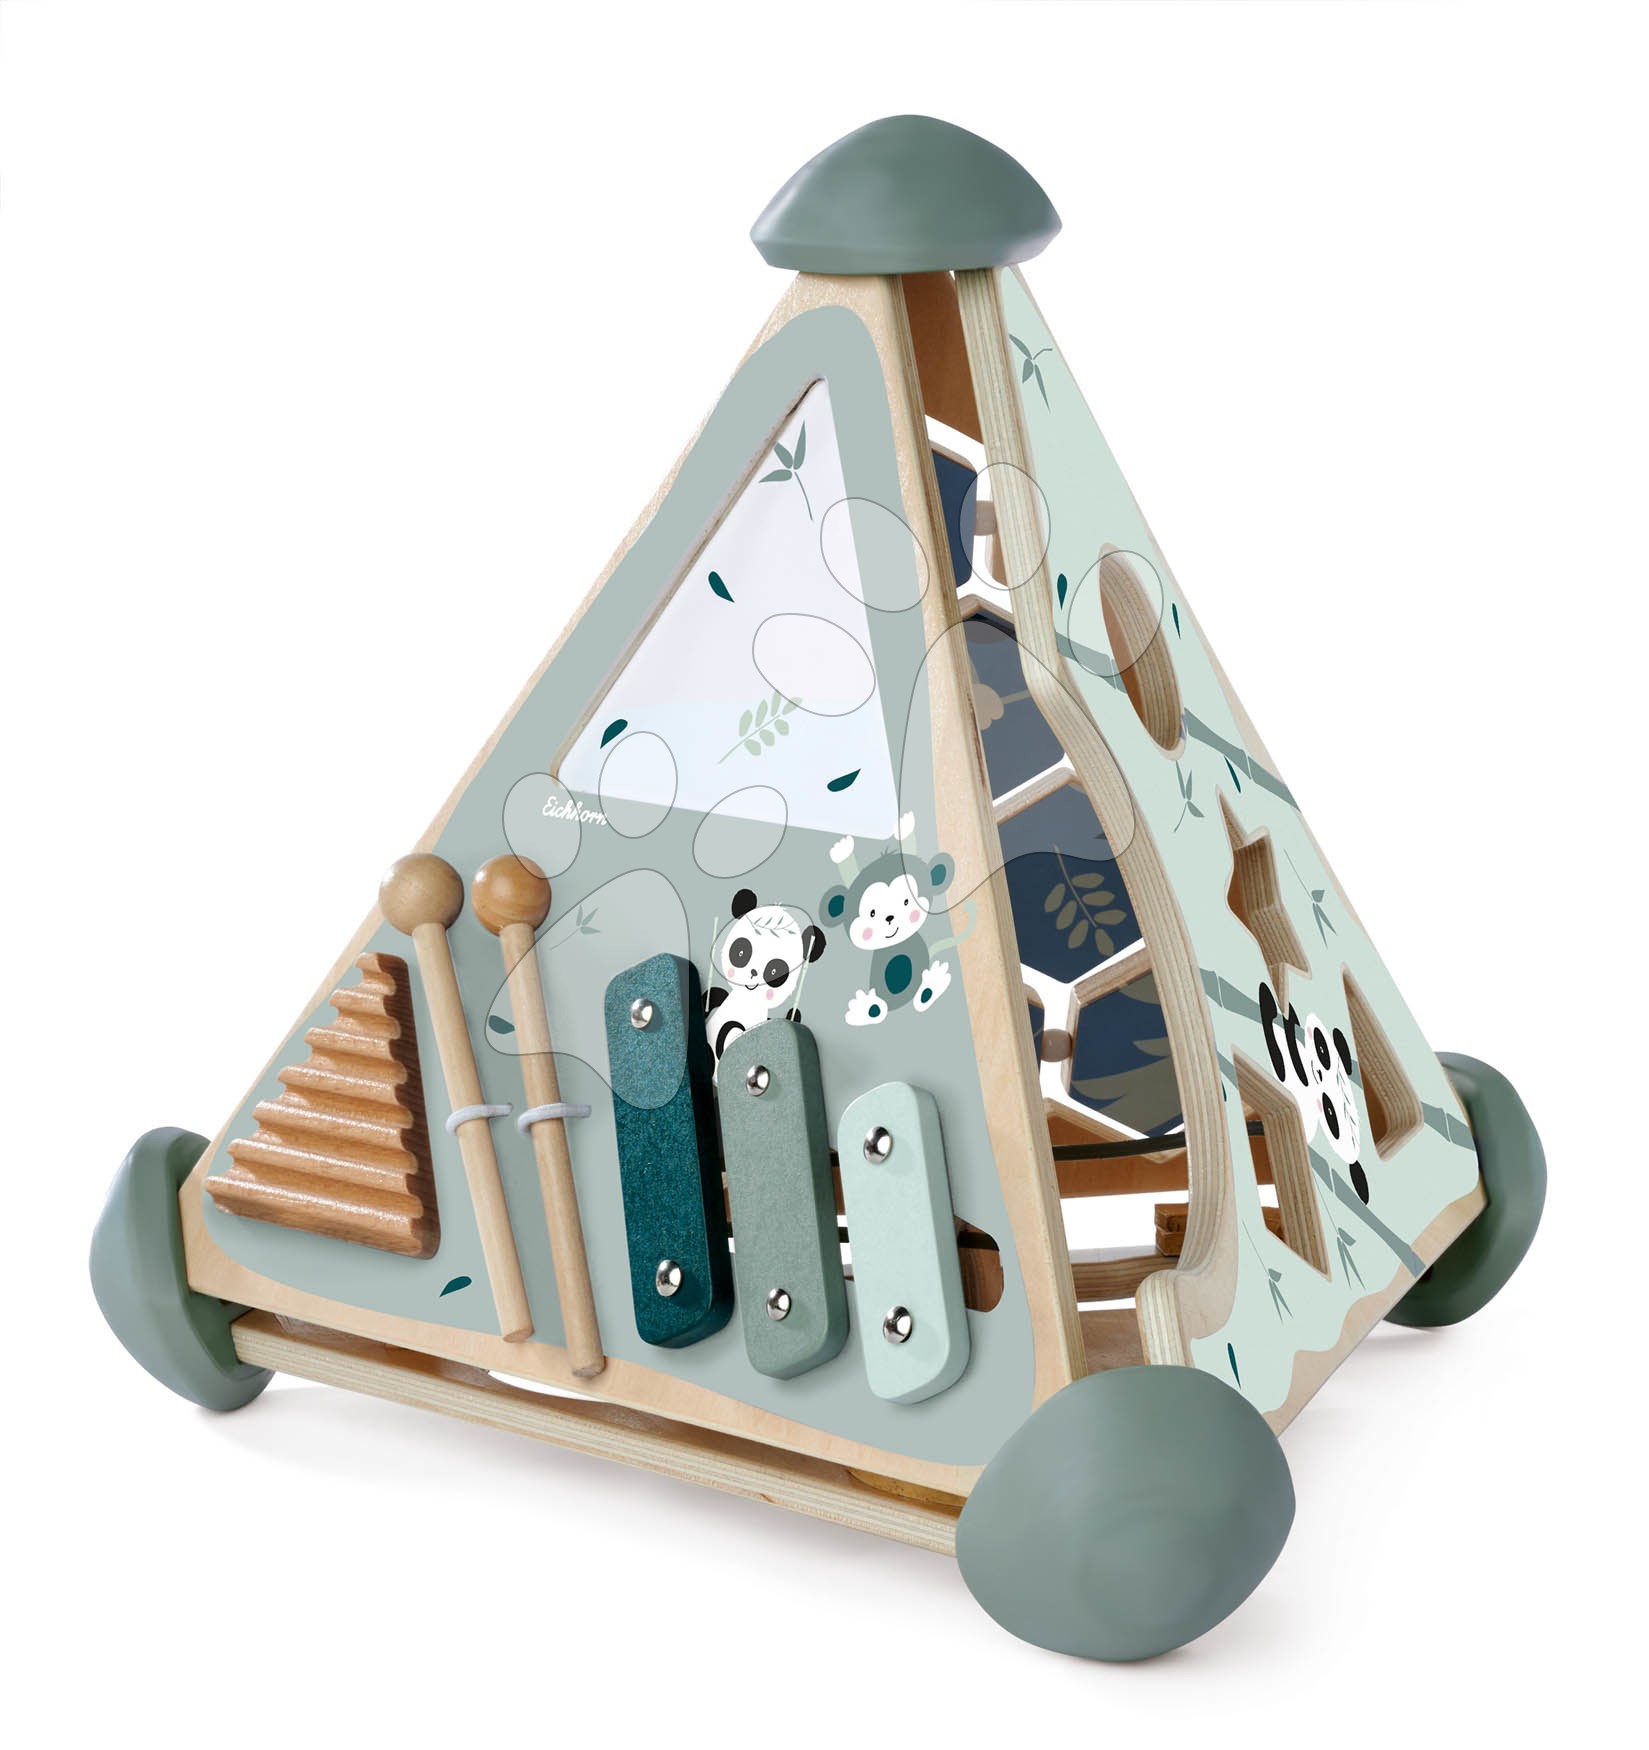 Drevené didaktické hračky - Drevená didaktická pyramída Game Center Pyramide Eichhorn s vkladacími kockami a xylofónom od 12 mes